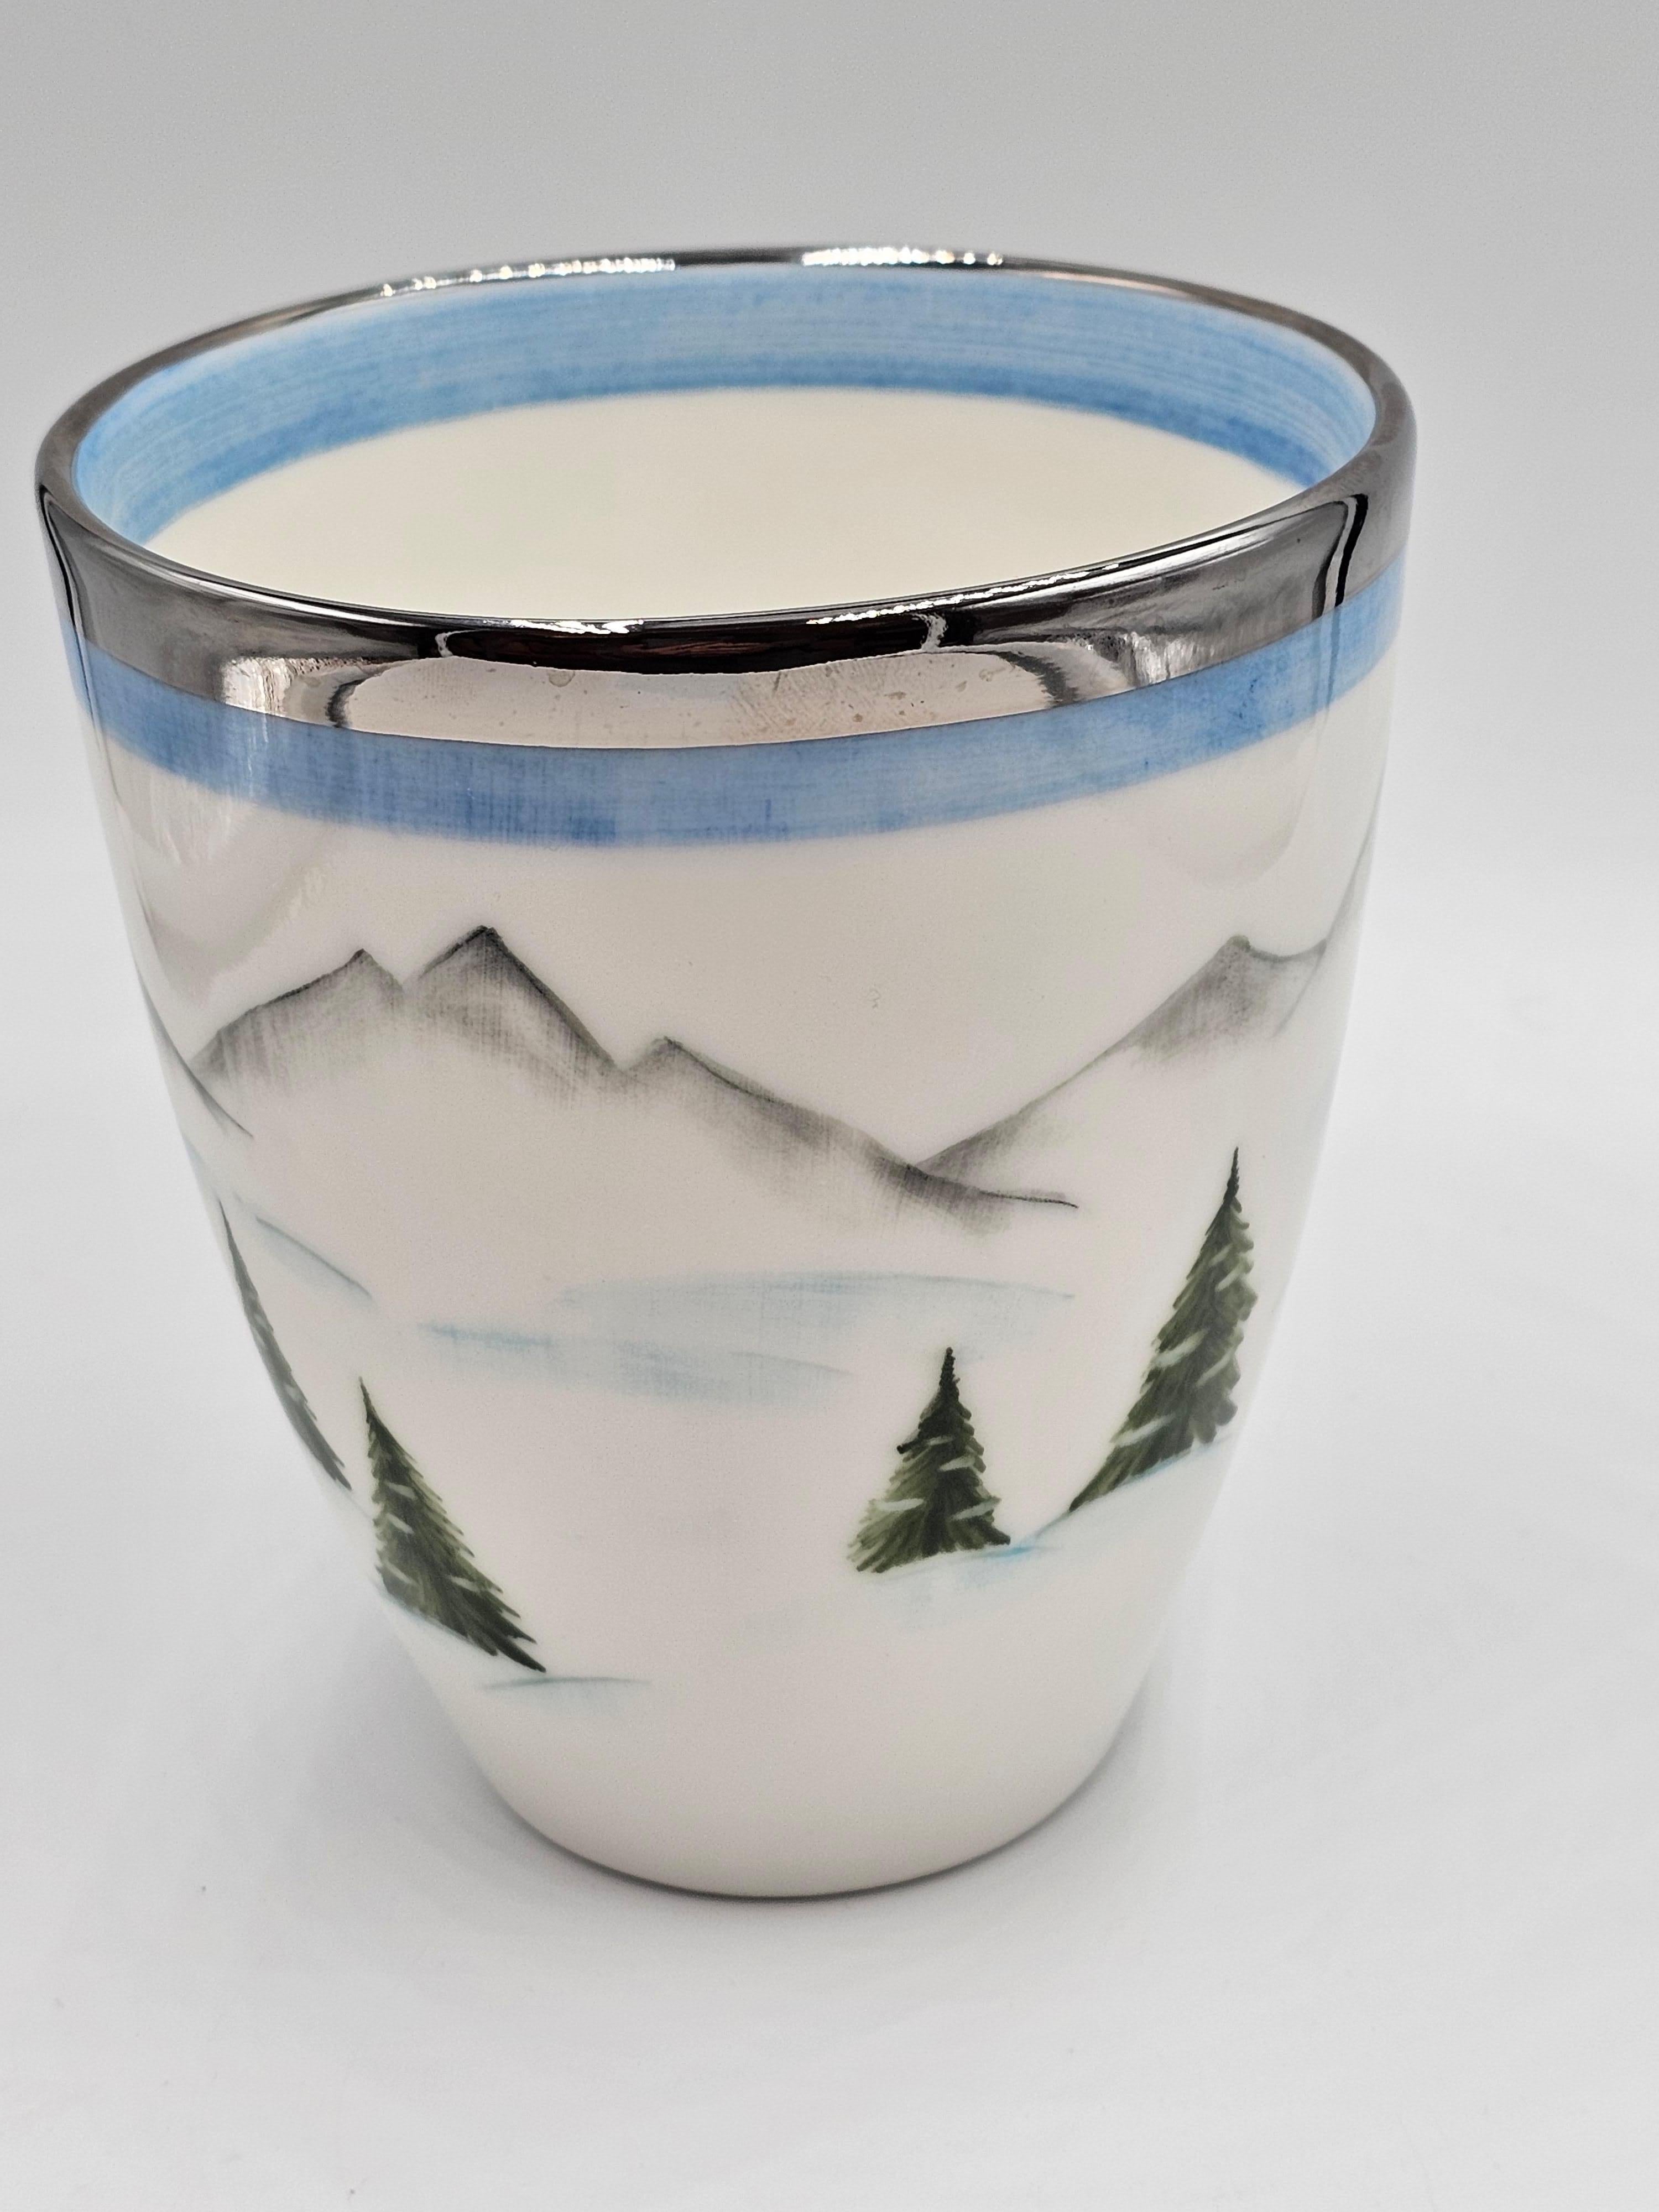 Vase en porcelaine entièrement fait à la main avec un décor de skieur peint à main levée tout autour dans le style Country. Mains libres peintes dans un design nostalgique avec un skieur, des arbres et une cabane dans les montagnes tout autour. Il